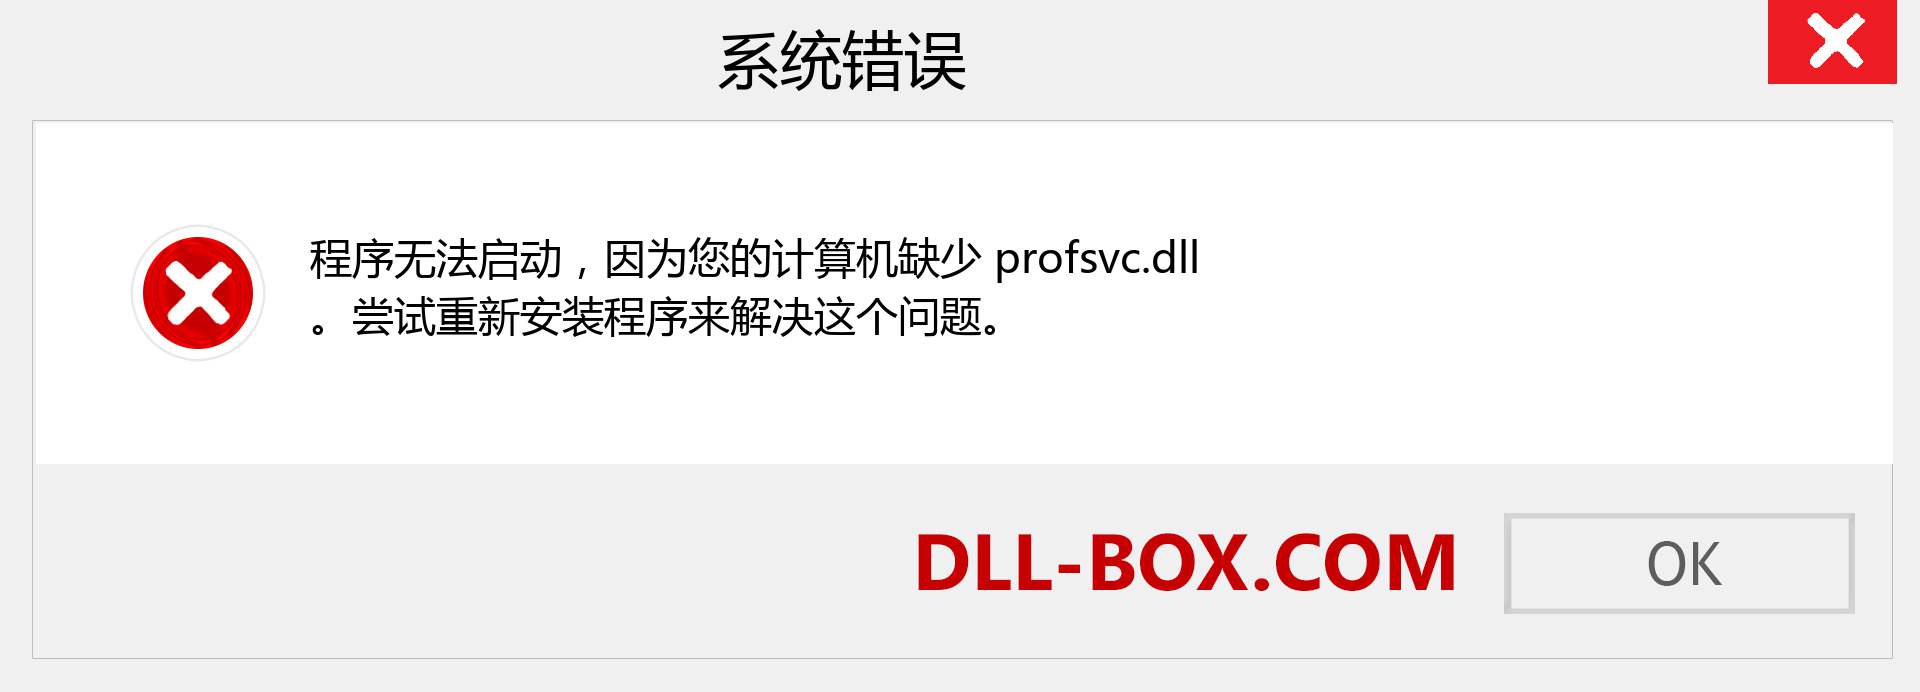 profsvc.dll 文件丢失？。 适用于 Windows 7、8、10 的下载 - 修复 Windows、照片、图像上的 profsvc dll 丢失错误